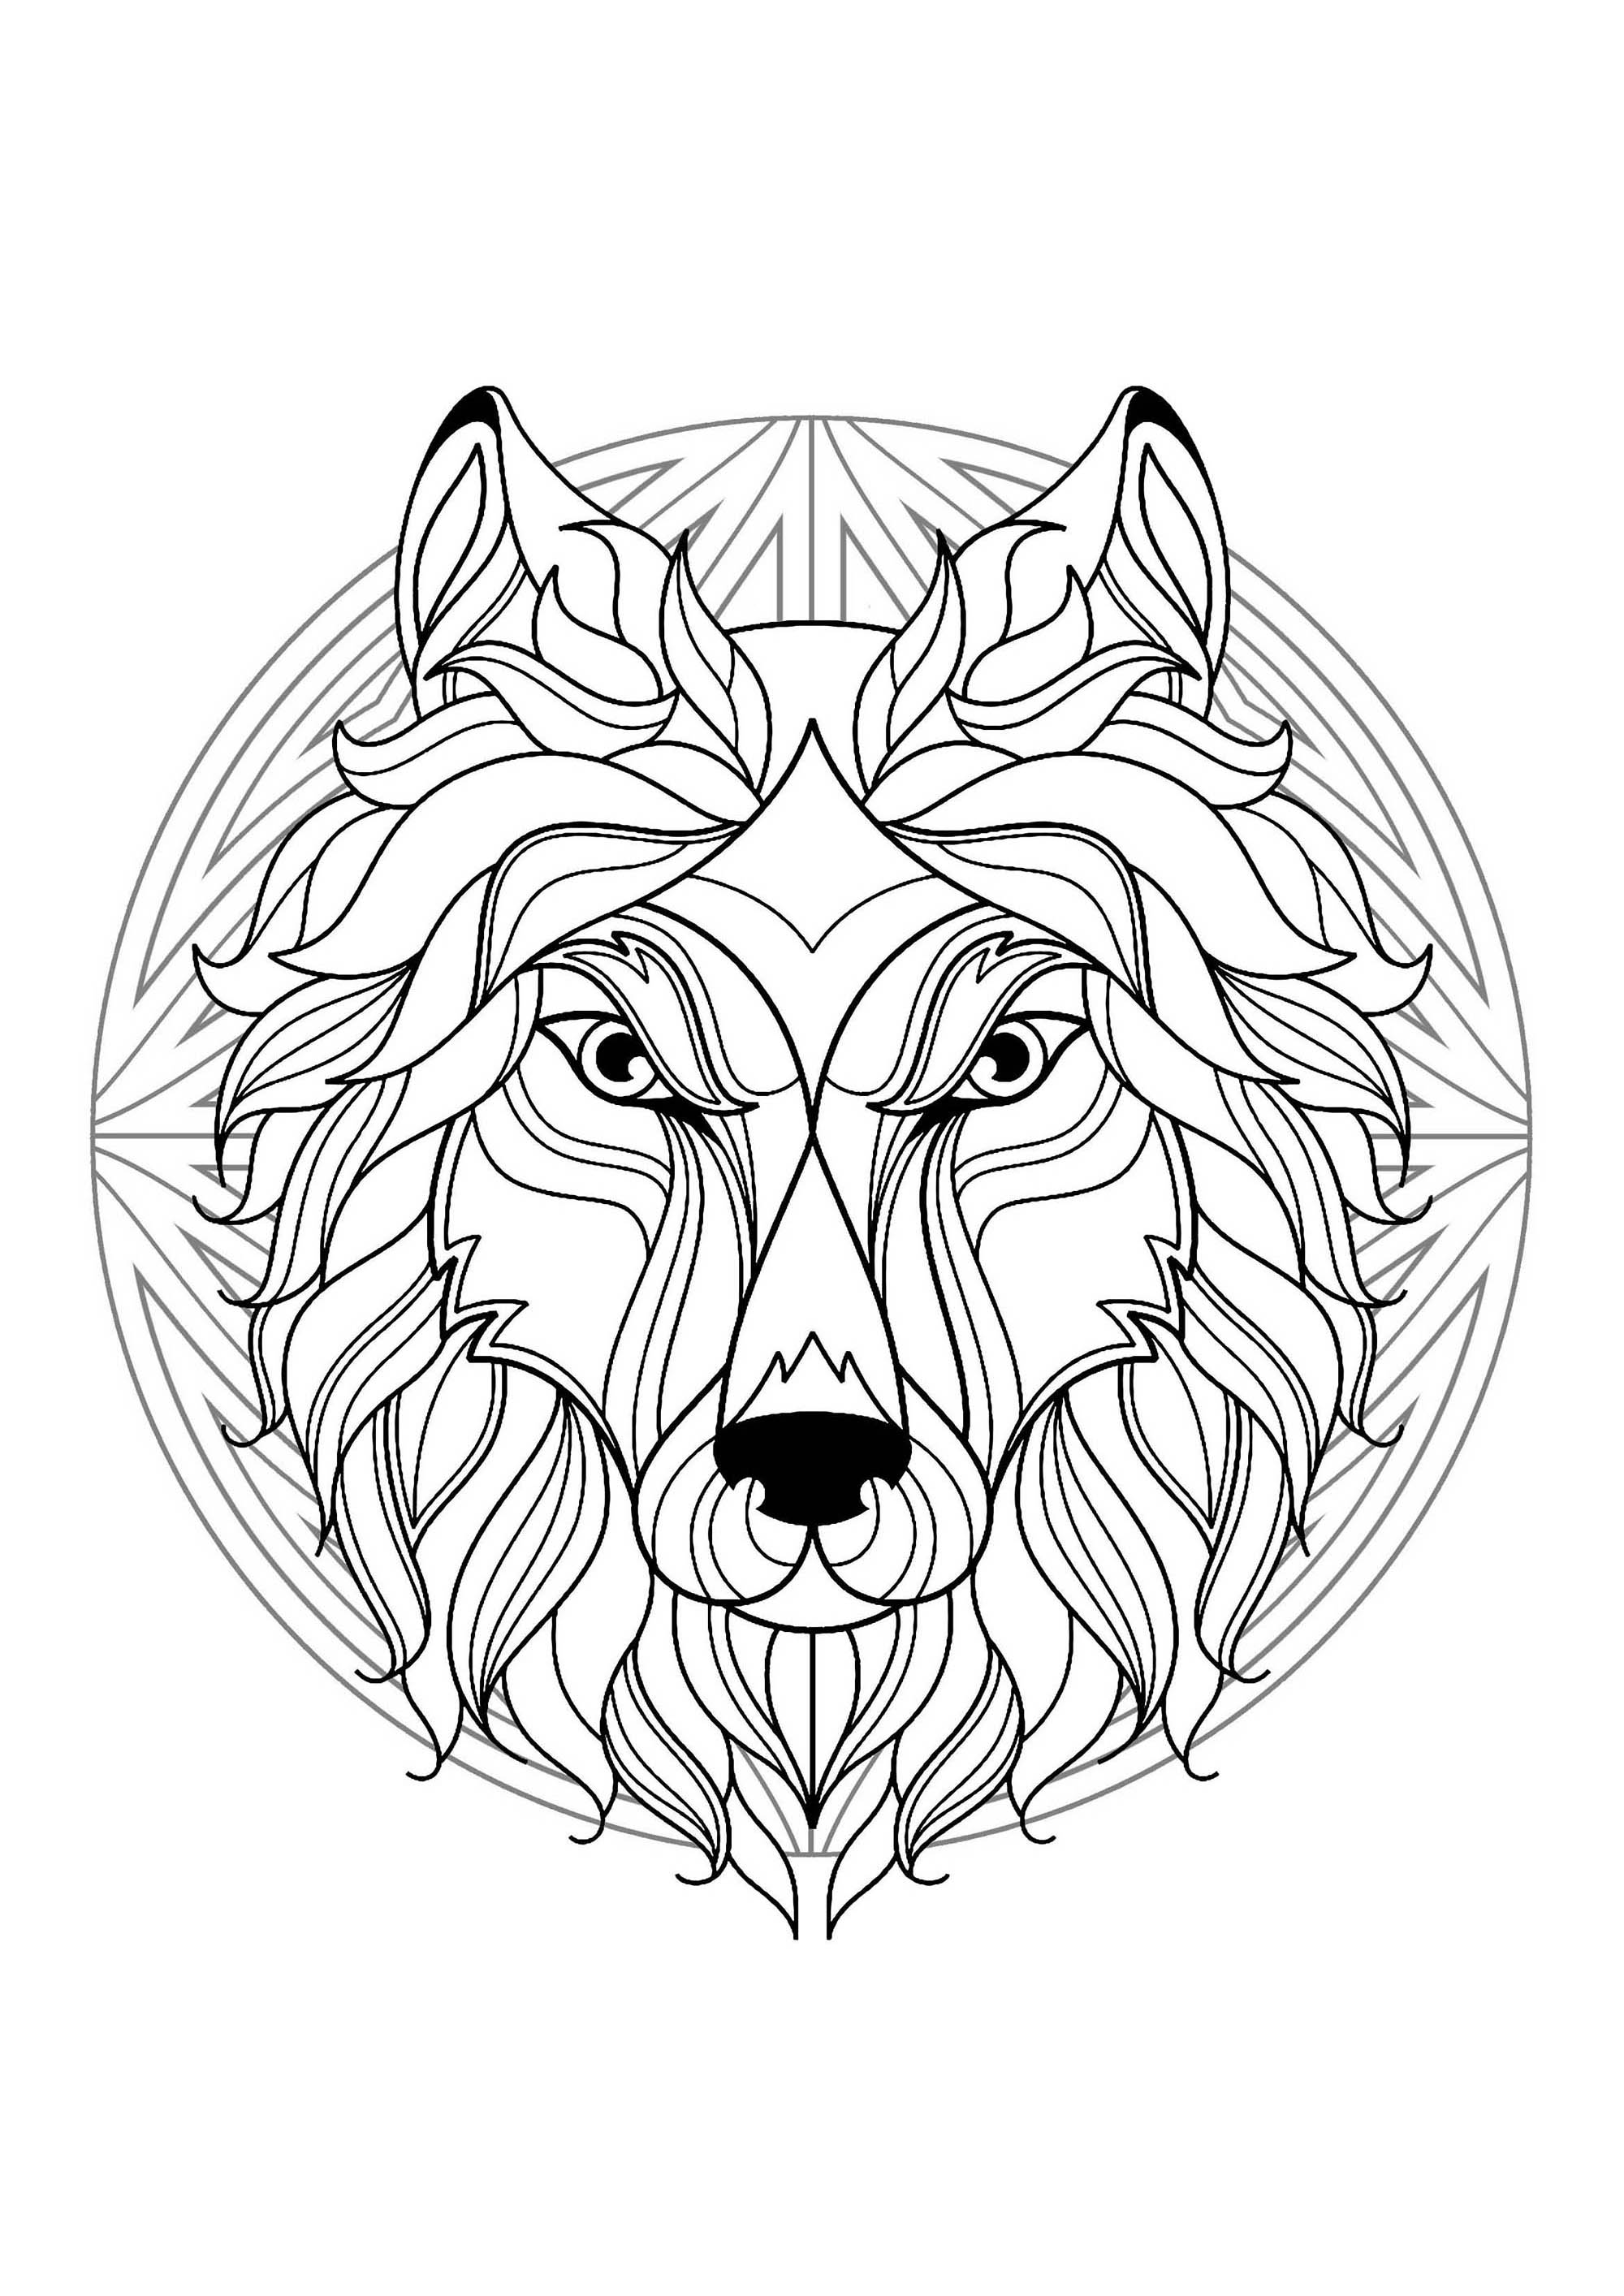 Mandala tête de loup - 1 - Mandalas difficiles (pour adultes)